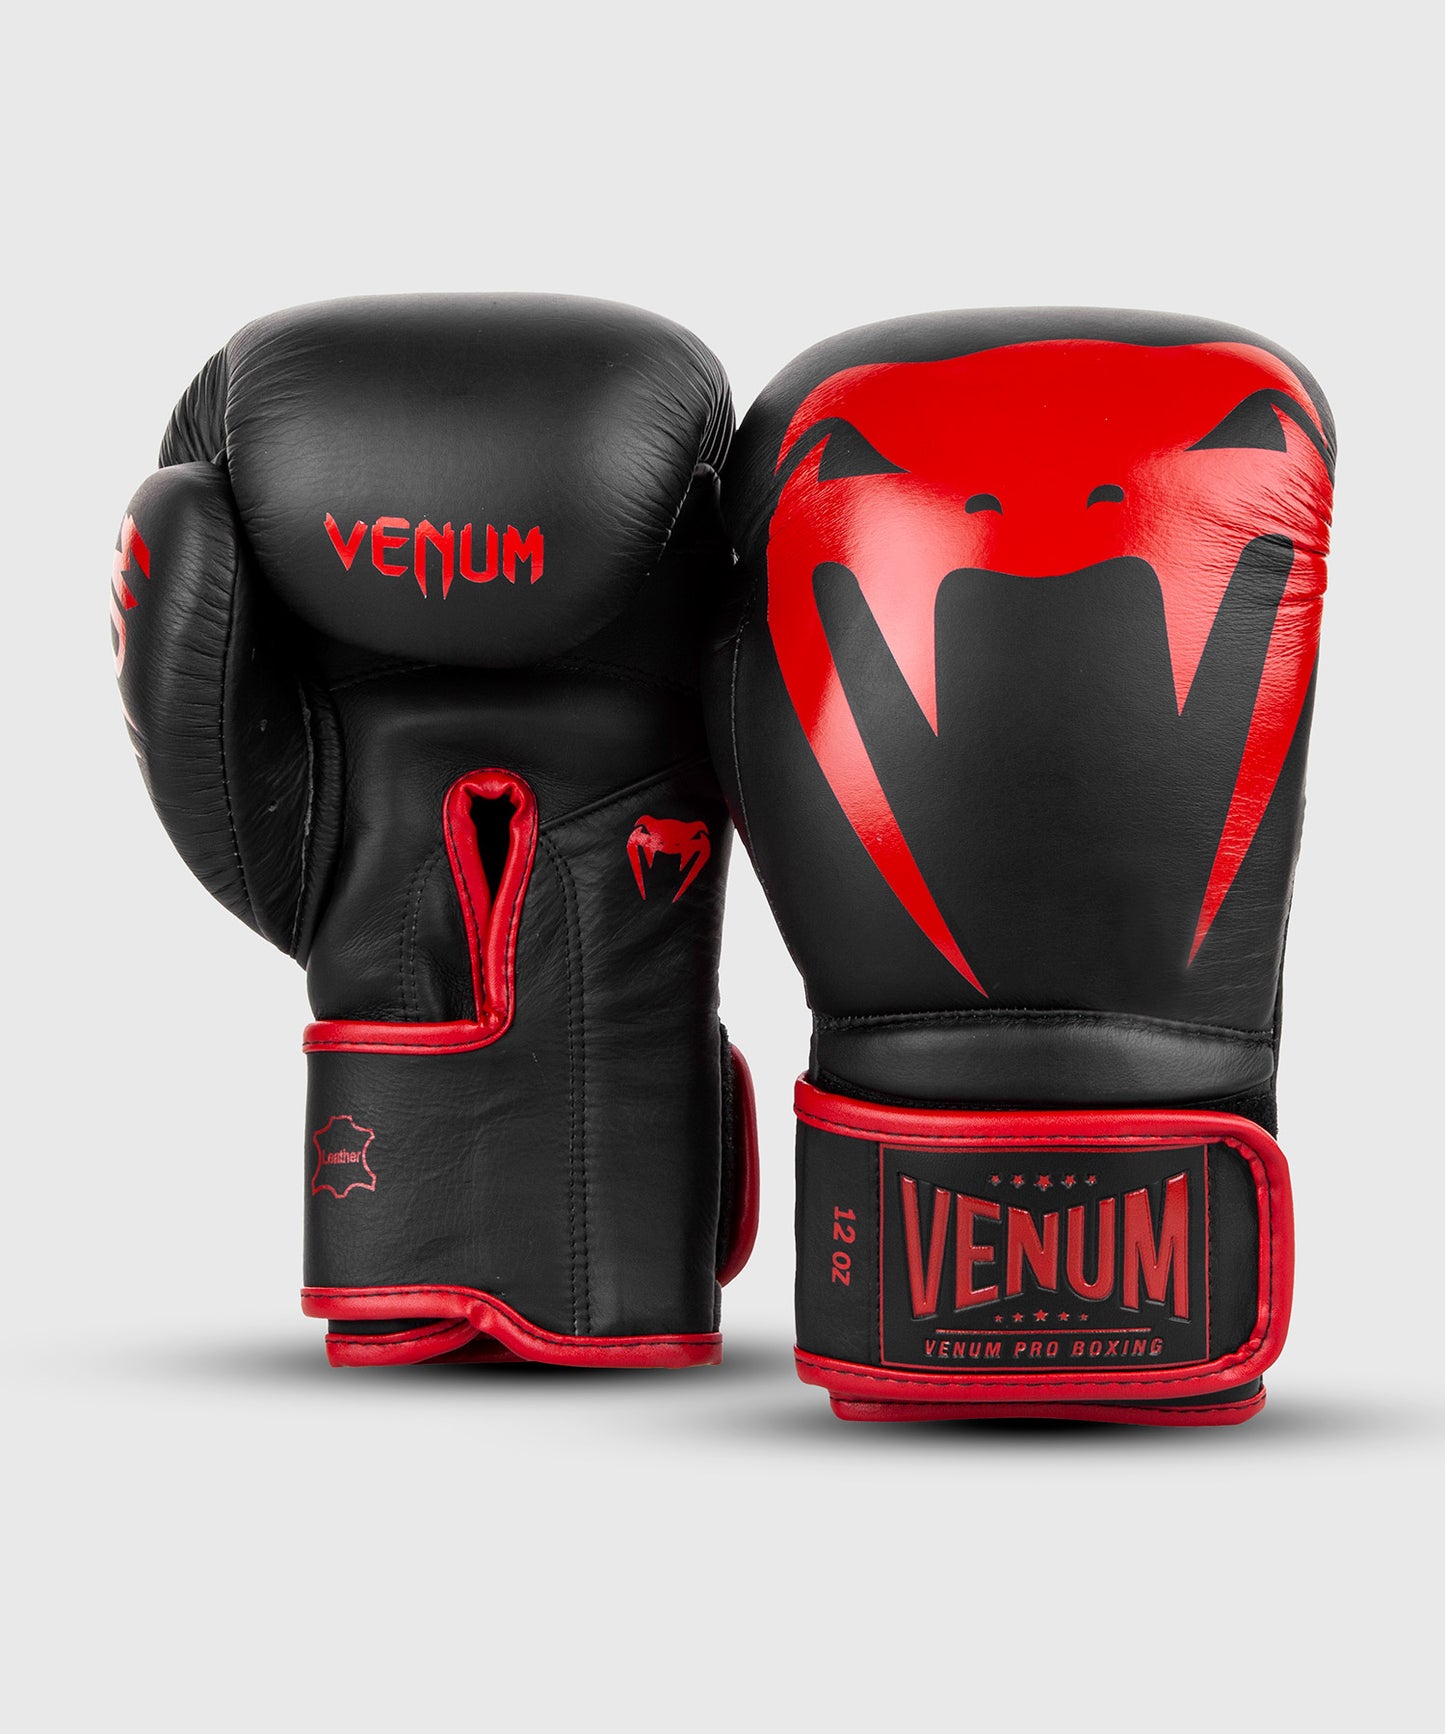 Venum Giant 2.0 professionelle Boxhandschuhe - Klettverschluss - Schwarz/Rot